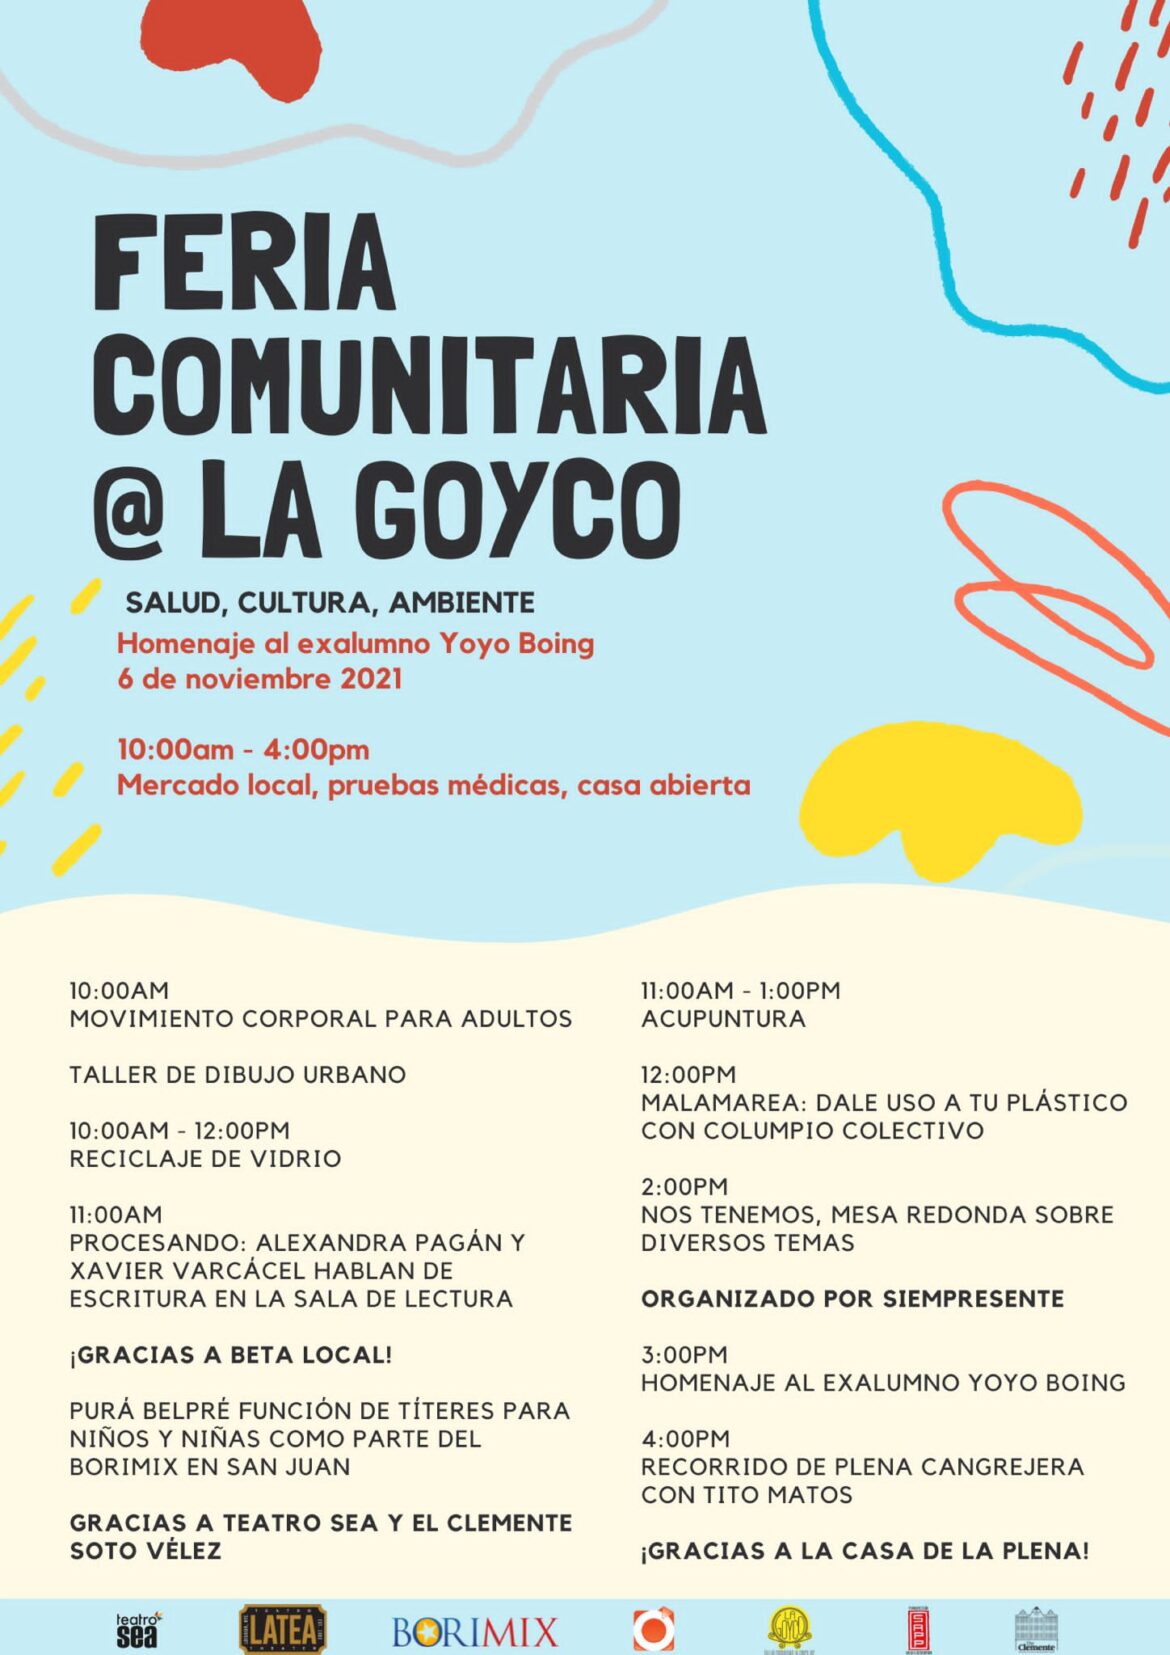 La Goyco y El Clemente firmarán acuerdo de colaboración Las organizaciones, en Santurce y Nueva York, comienzan formalmente relación de intercambio cultural